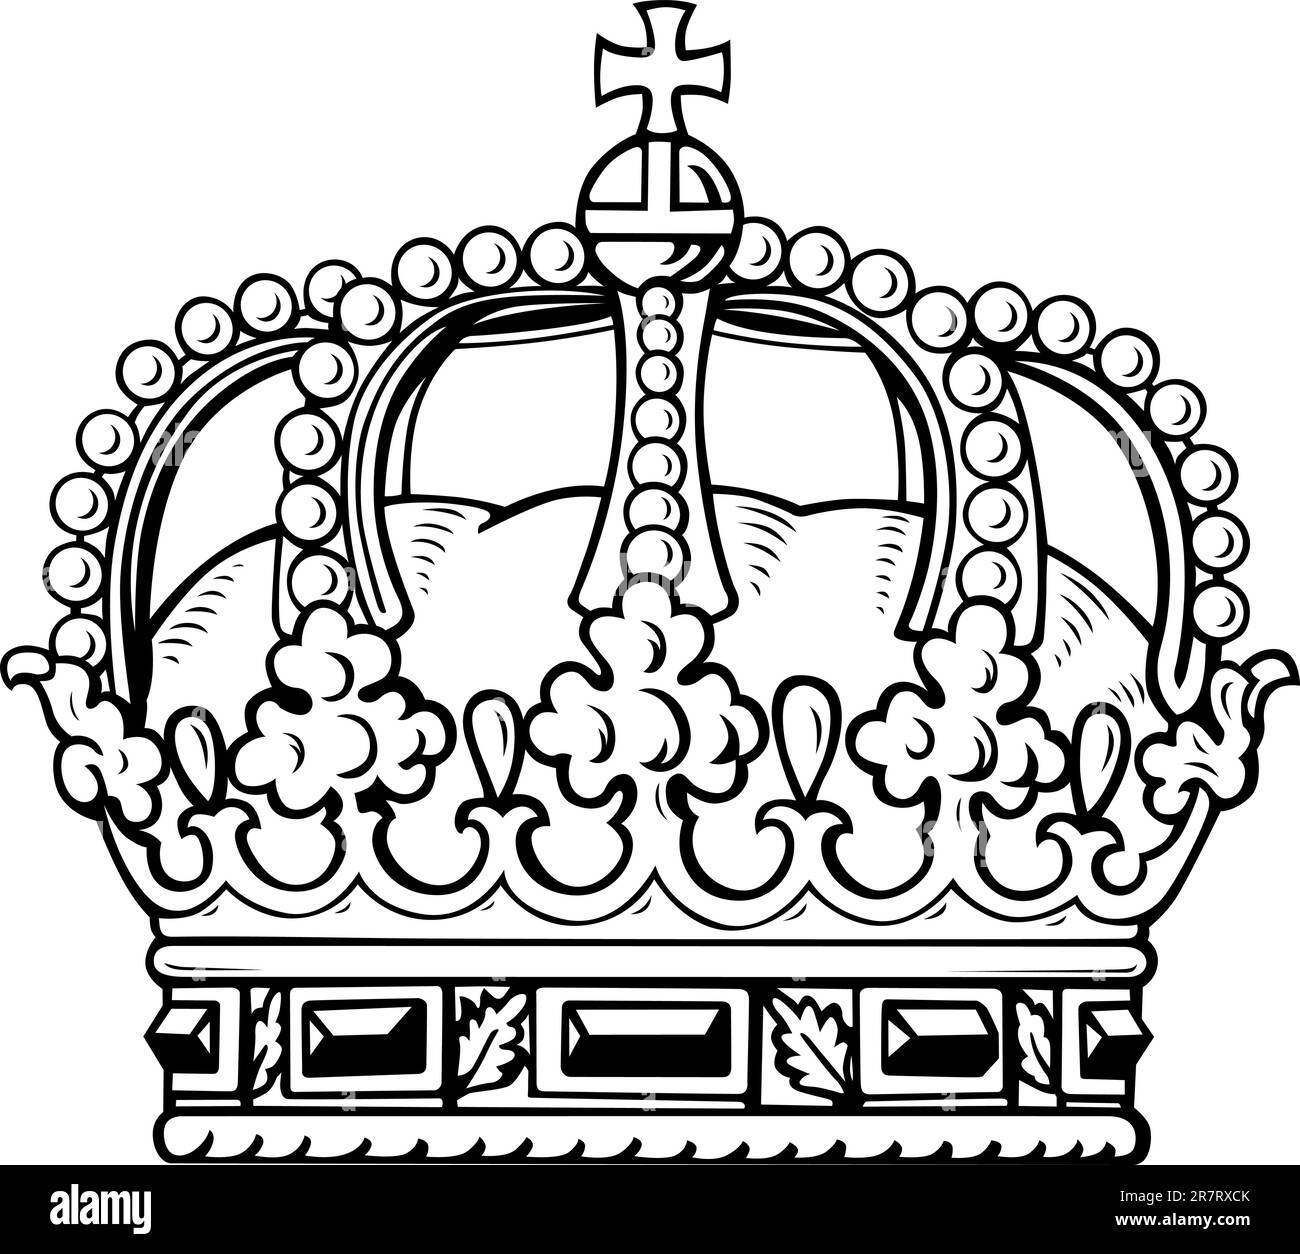 Corona bianca isolata su sfondo bianco Illustrazione Vettoriale